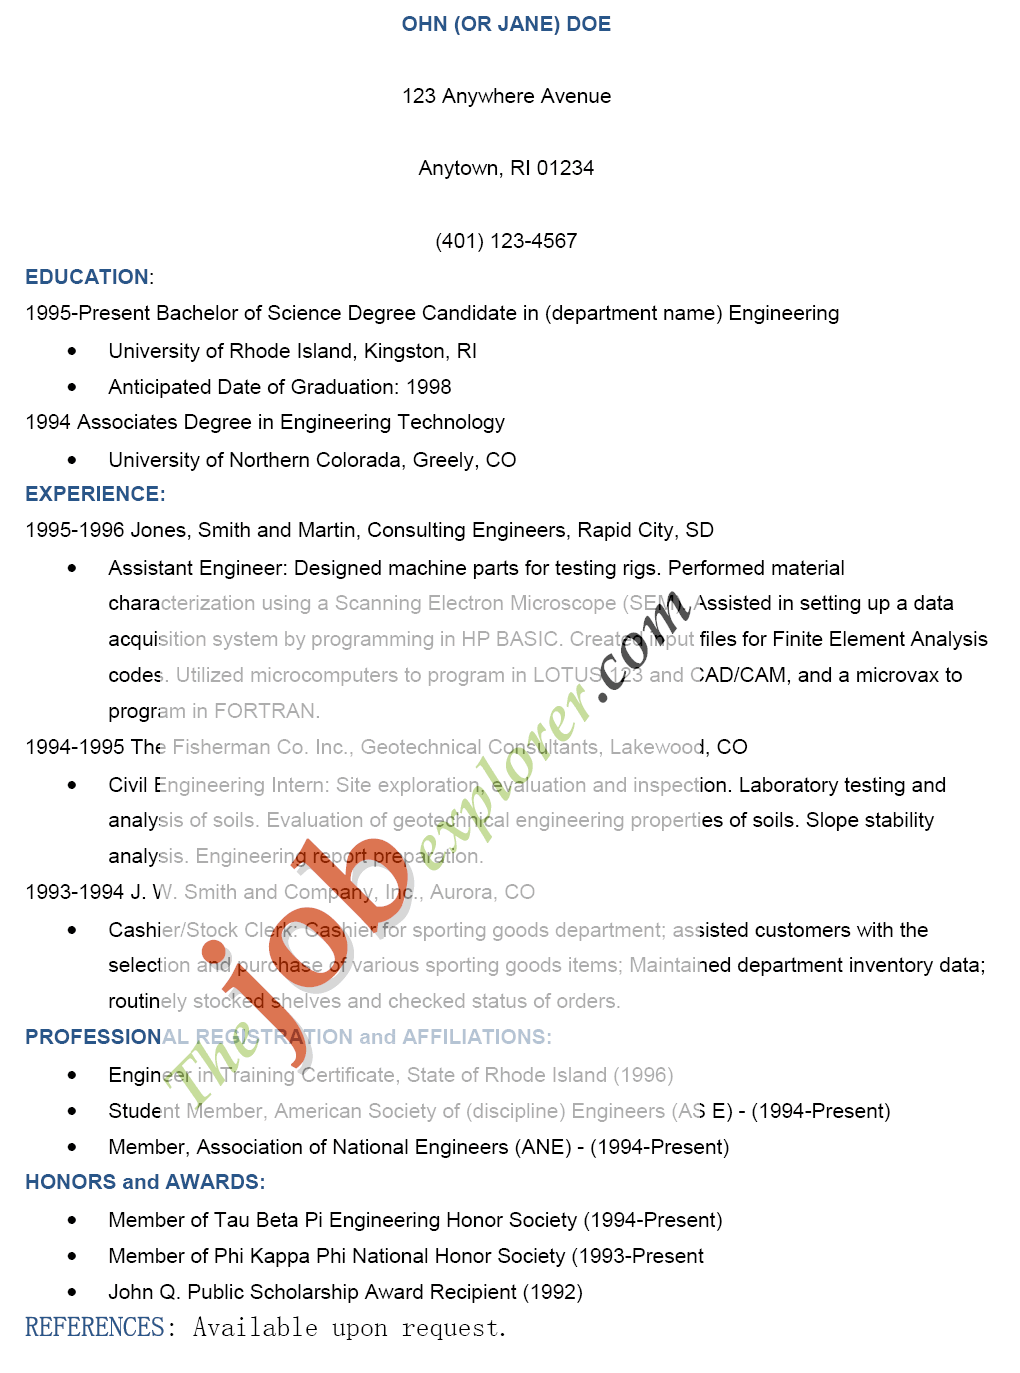 How towrite a job resume